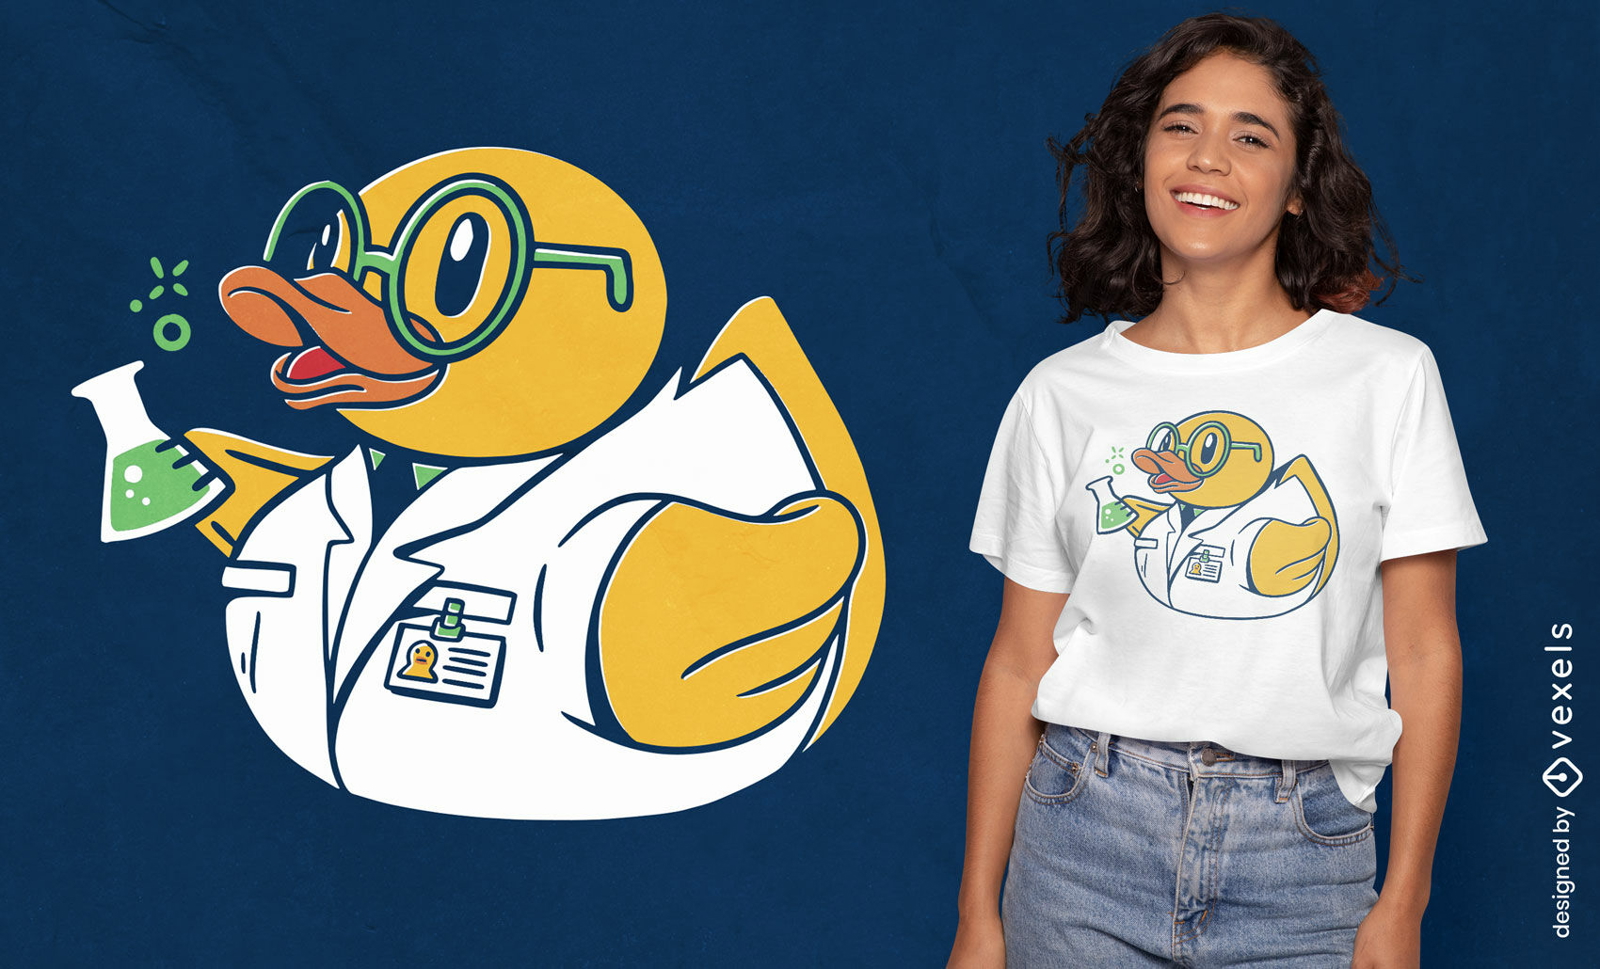 Scientist toy rubber duck t-shirt design